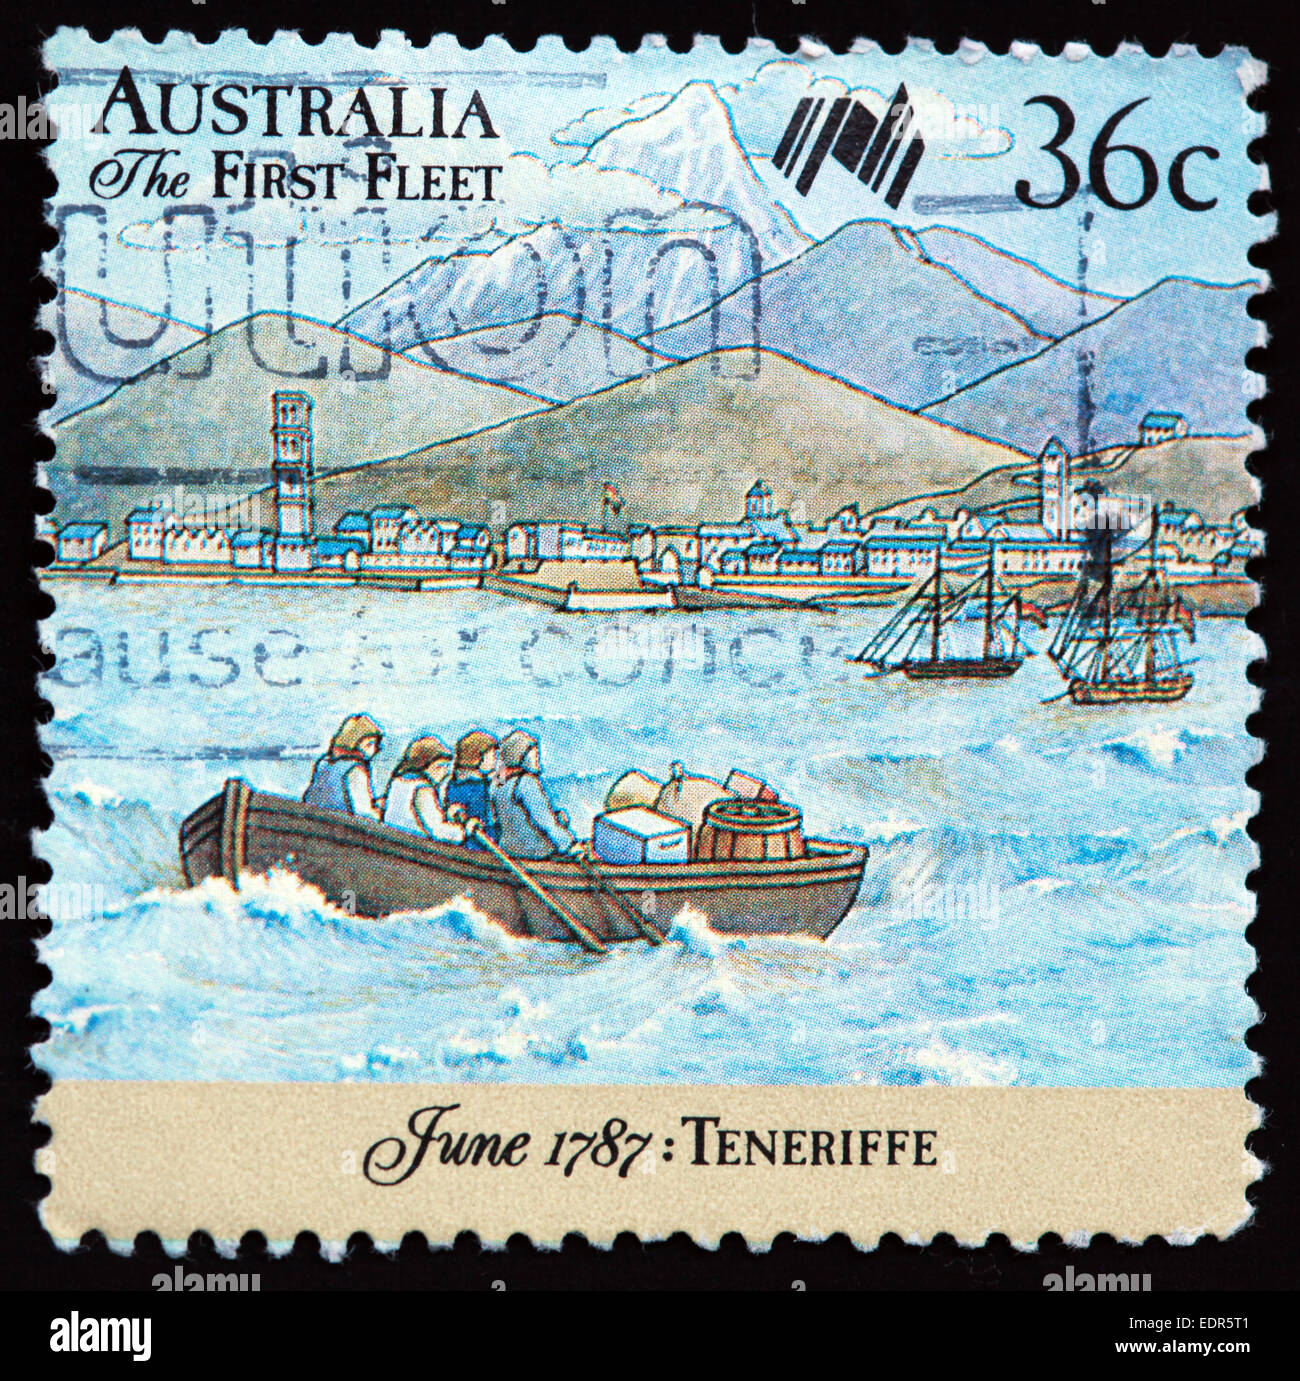 Utilisé et oblitérée Australie / Austrailian Stamp 36c la première flotte Juin 1787 Teneriffe Banque D'Images